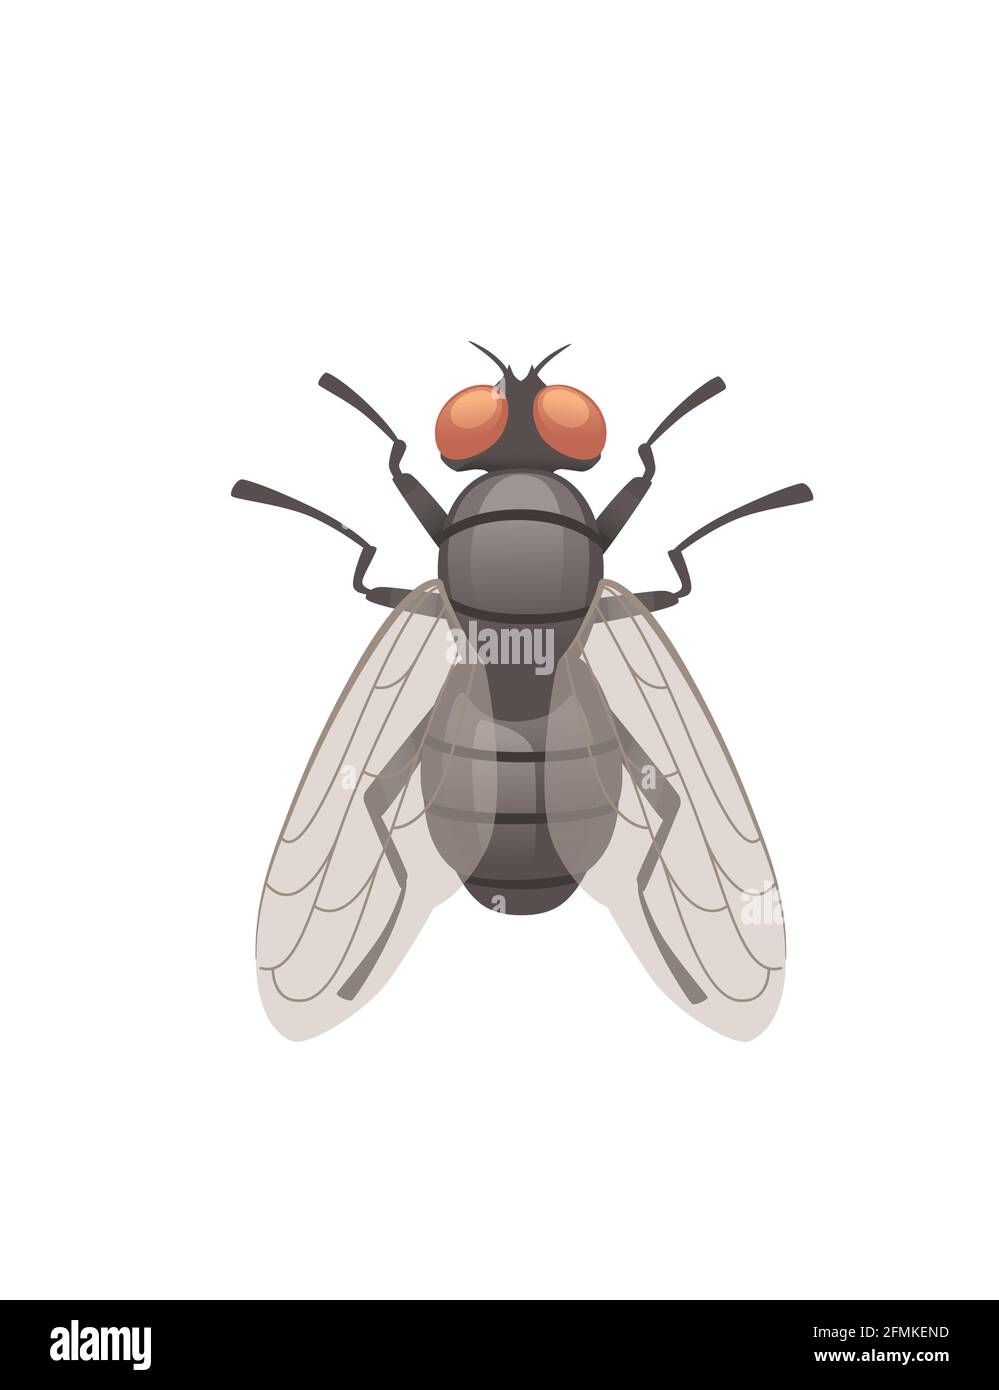 Hausfliege fliegende Insekten Cartoon fliegen Design Vektor Illustration auf weiß Draufsicht im Hintergrund Stock Vektor